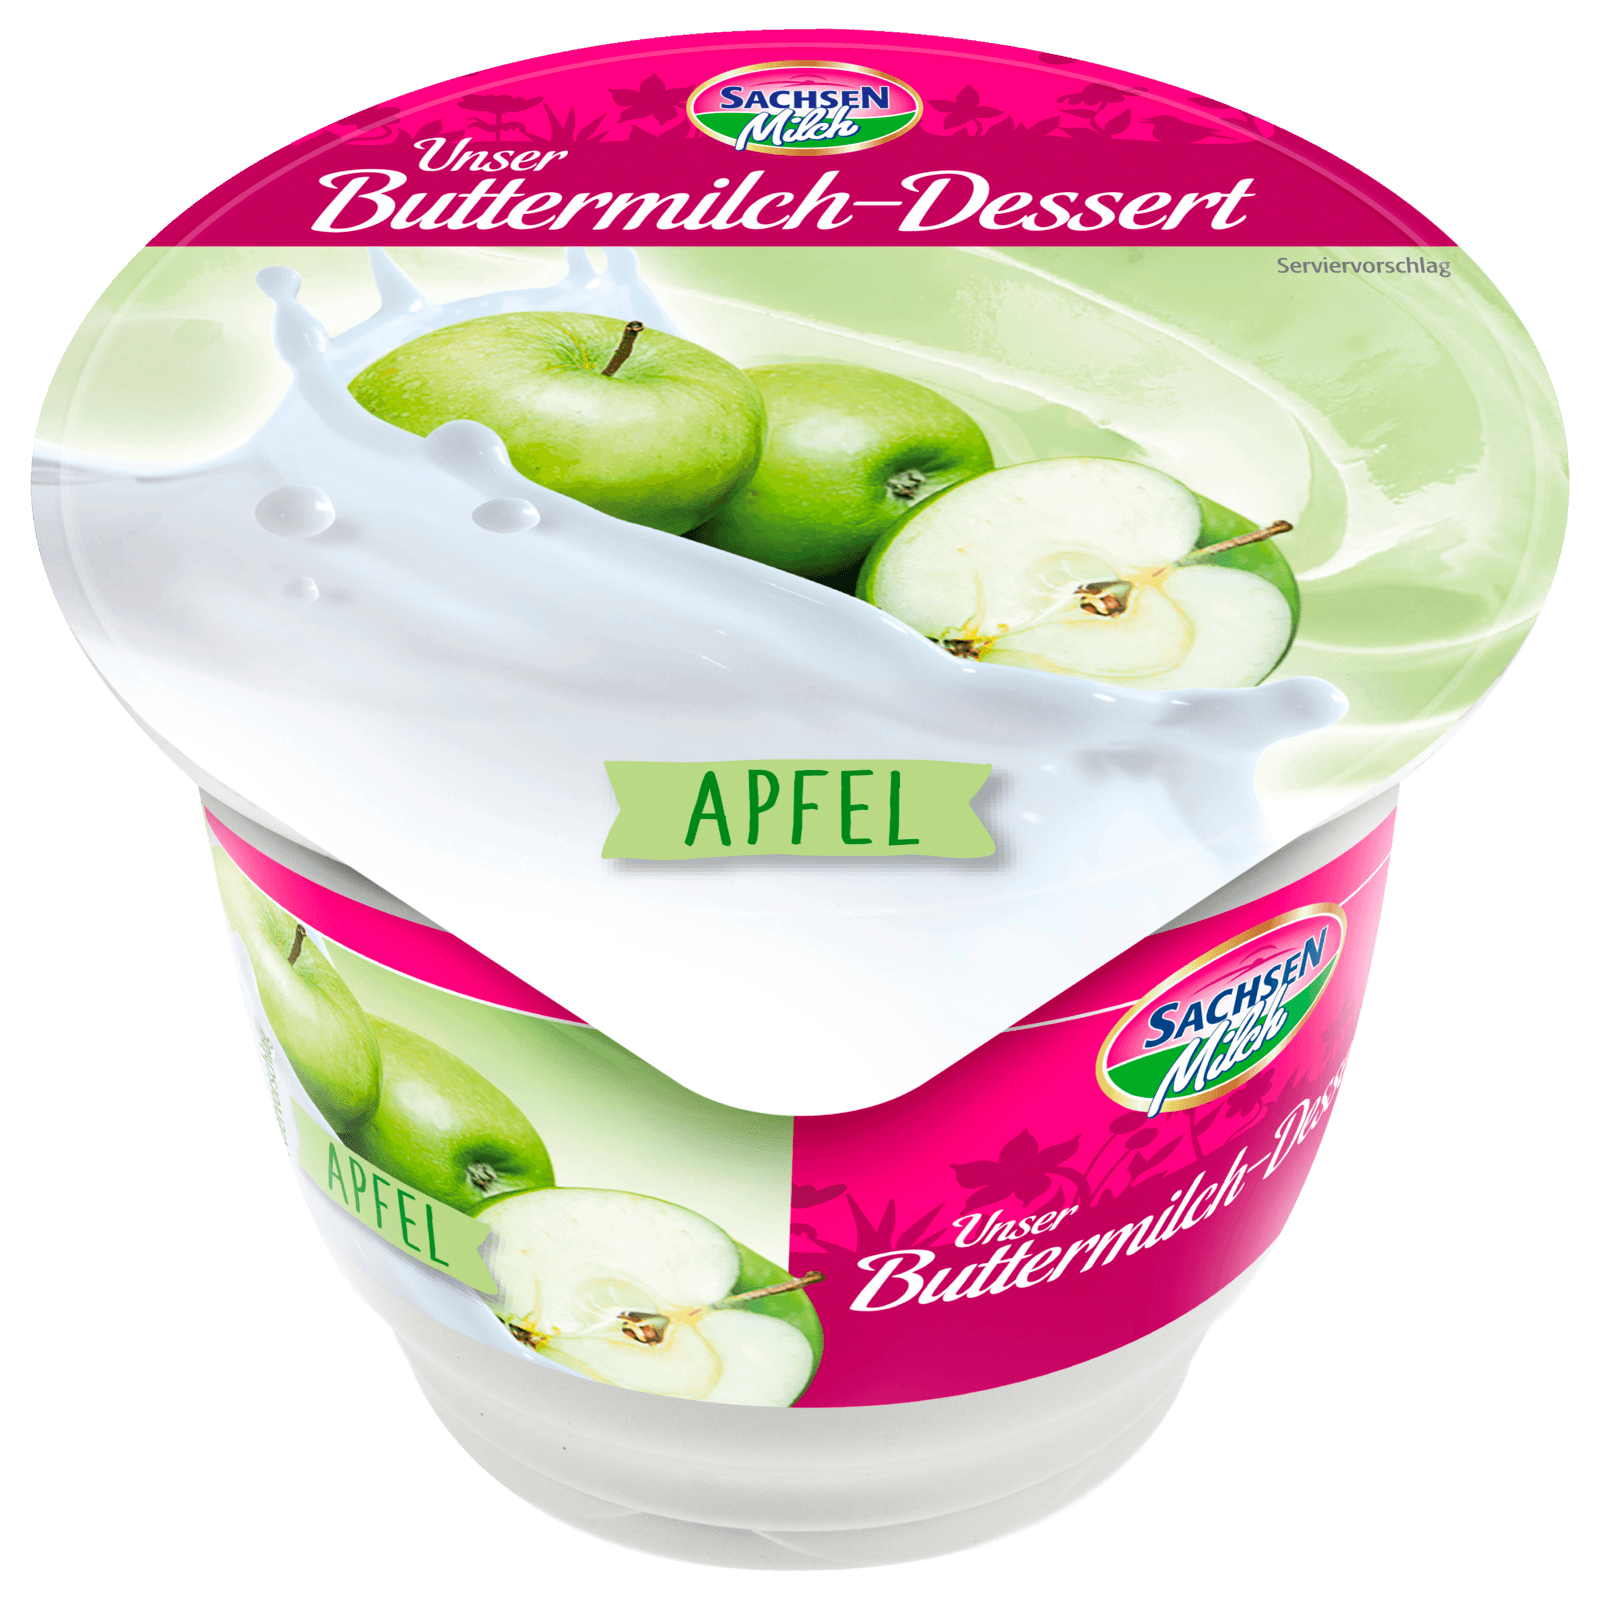 Sachsenmilch Unser Buttermilch-Dessert Gartenfrüchte Apfel 200g  für 0.69 EUR